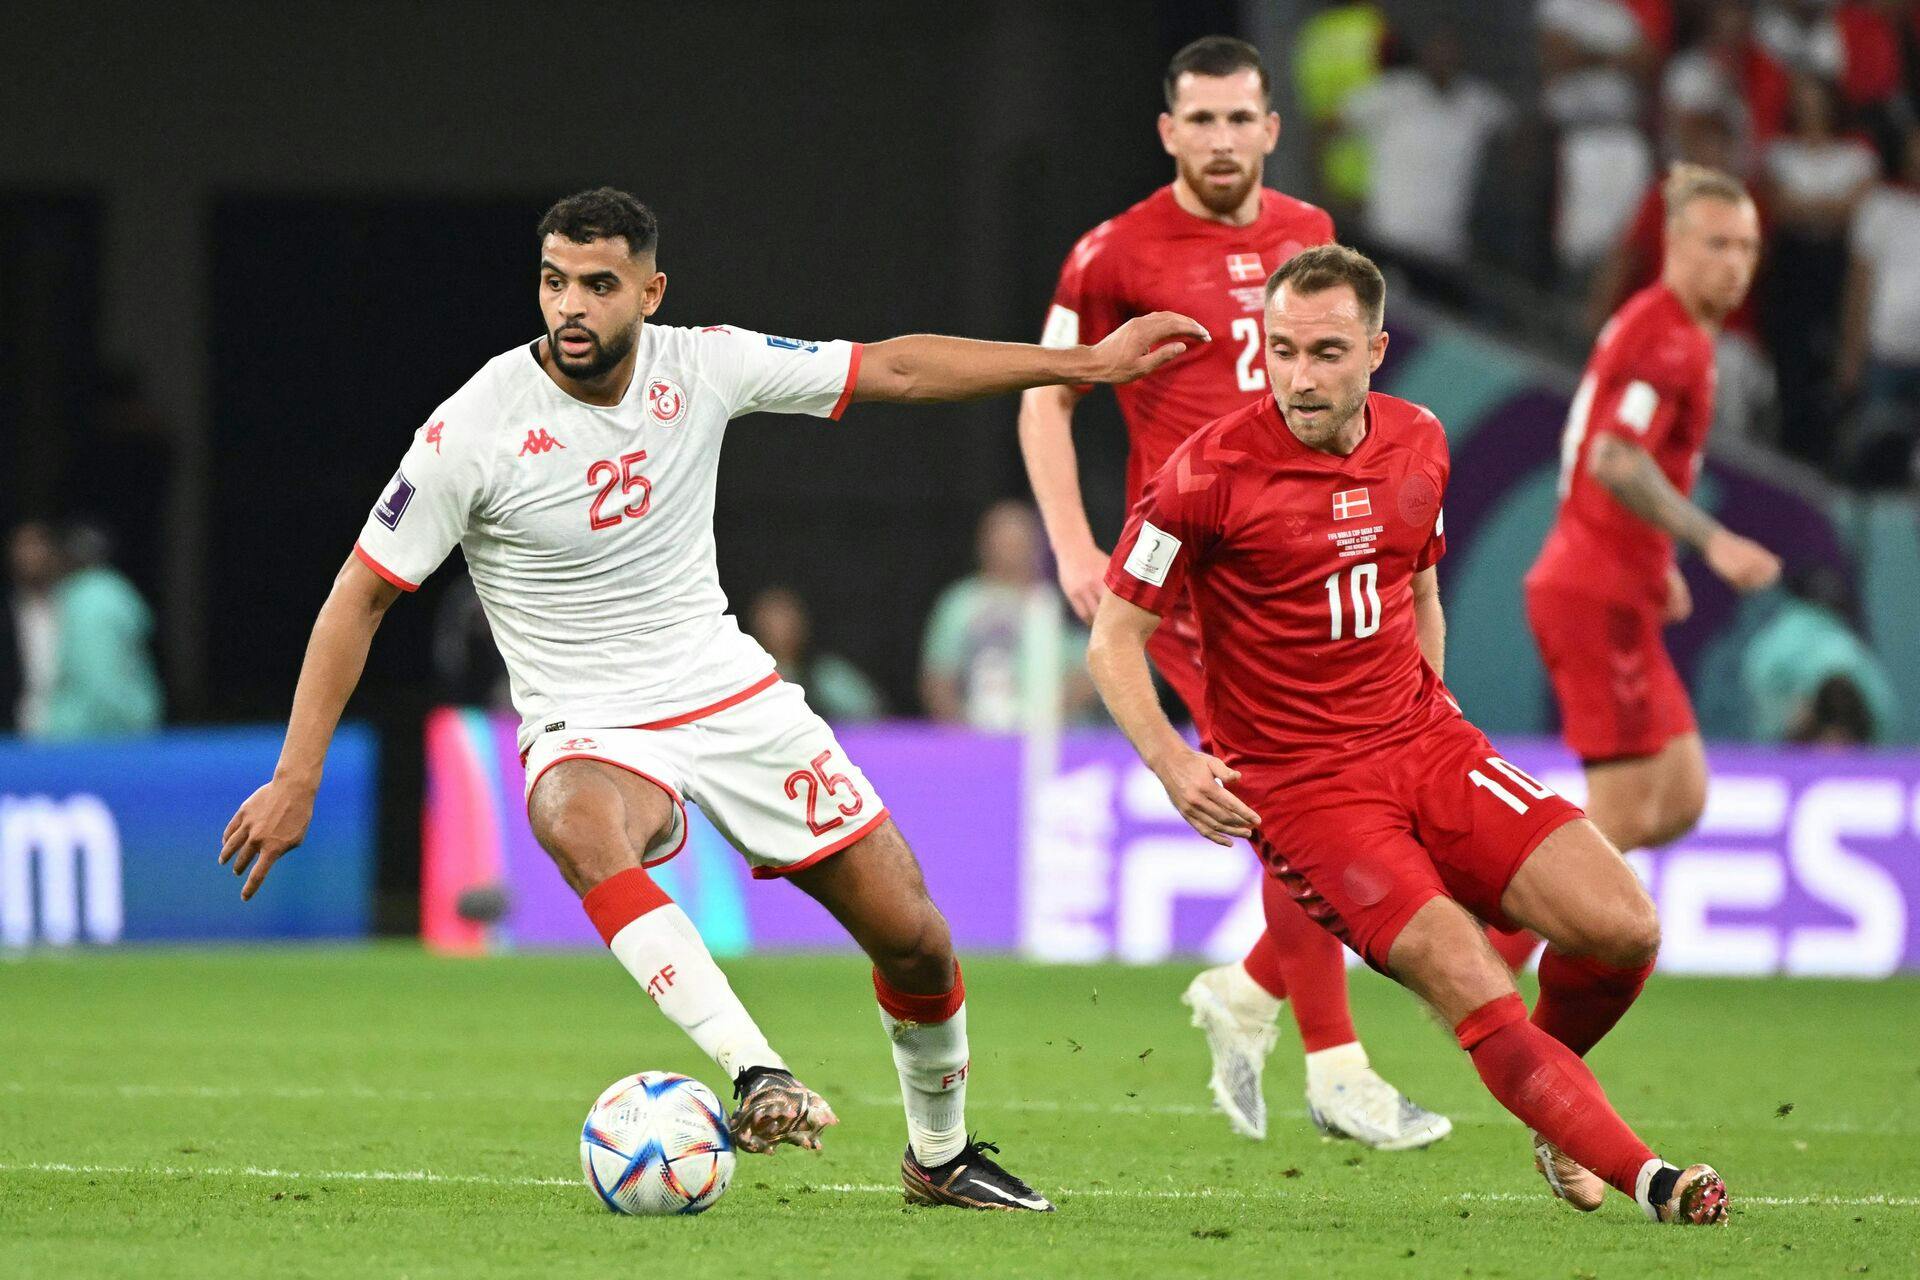 Anis Ben Slimane har dobbelt statsborgerskab og repræsenterede derfor Tunesien til VM i Qatar i december, hvor han blandt andet spillede i landskampen mod Danmark.